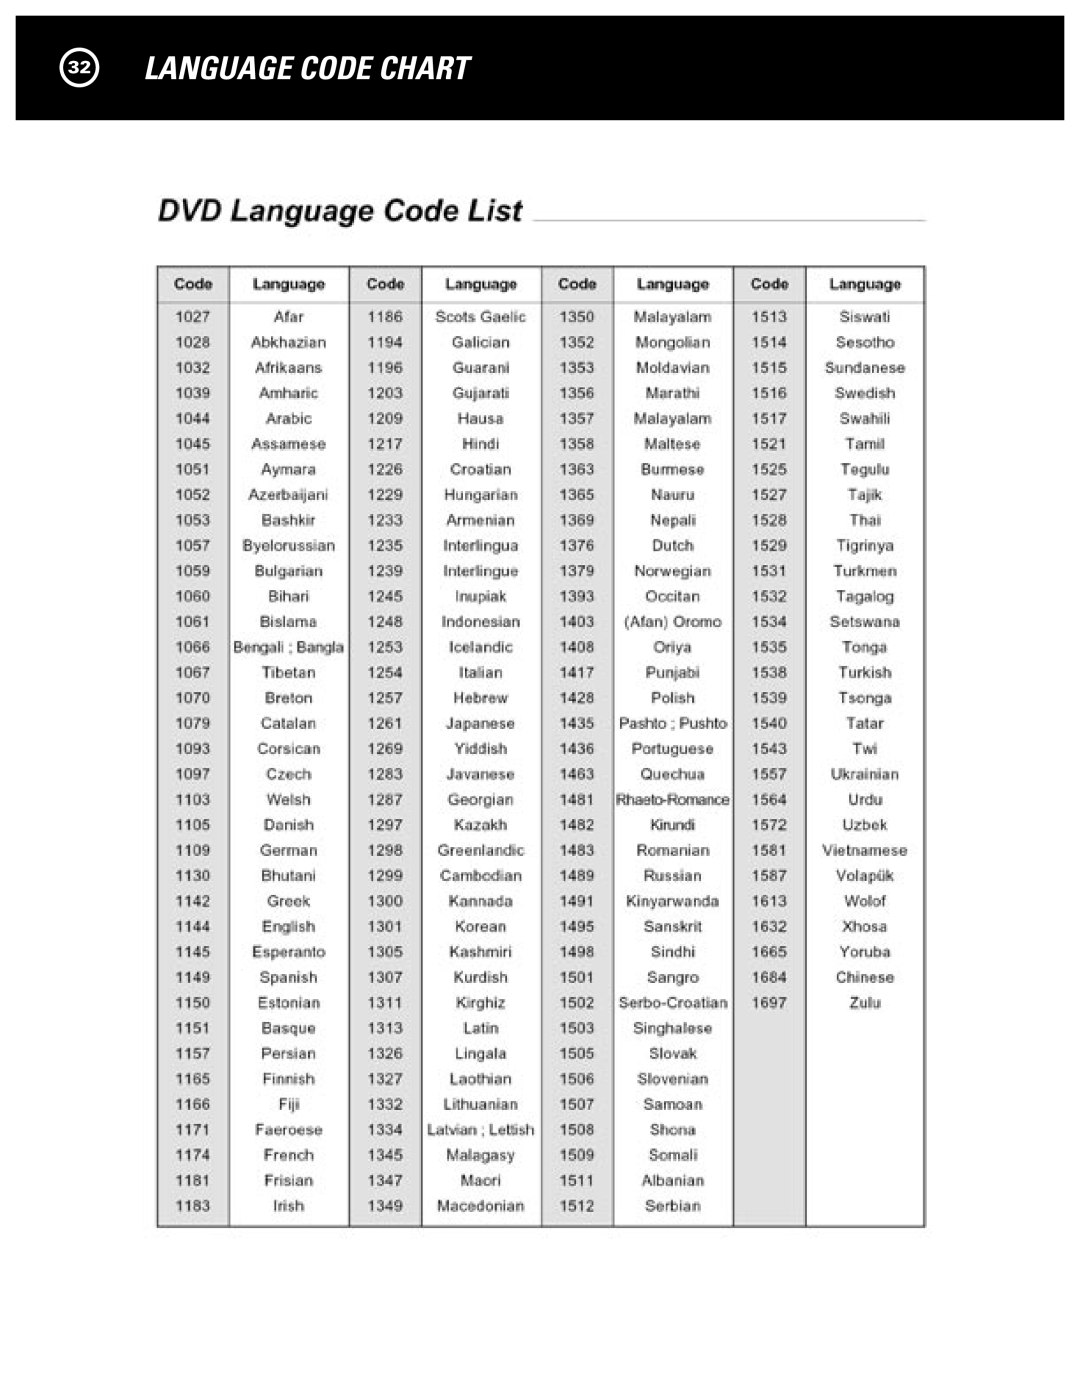 Parasound D 200 manual Language Code Chart 